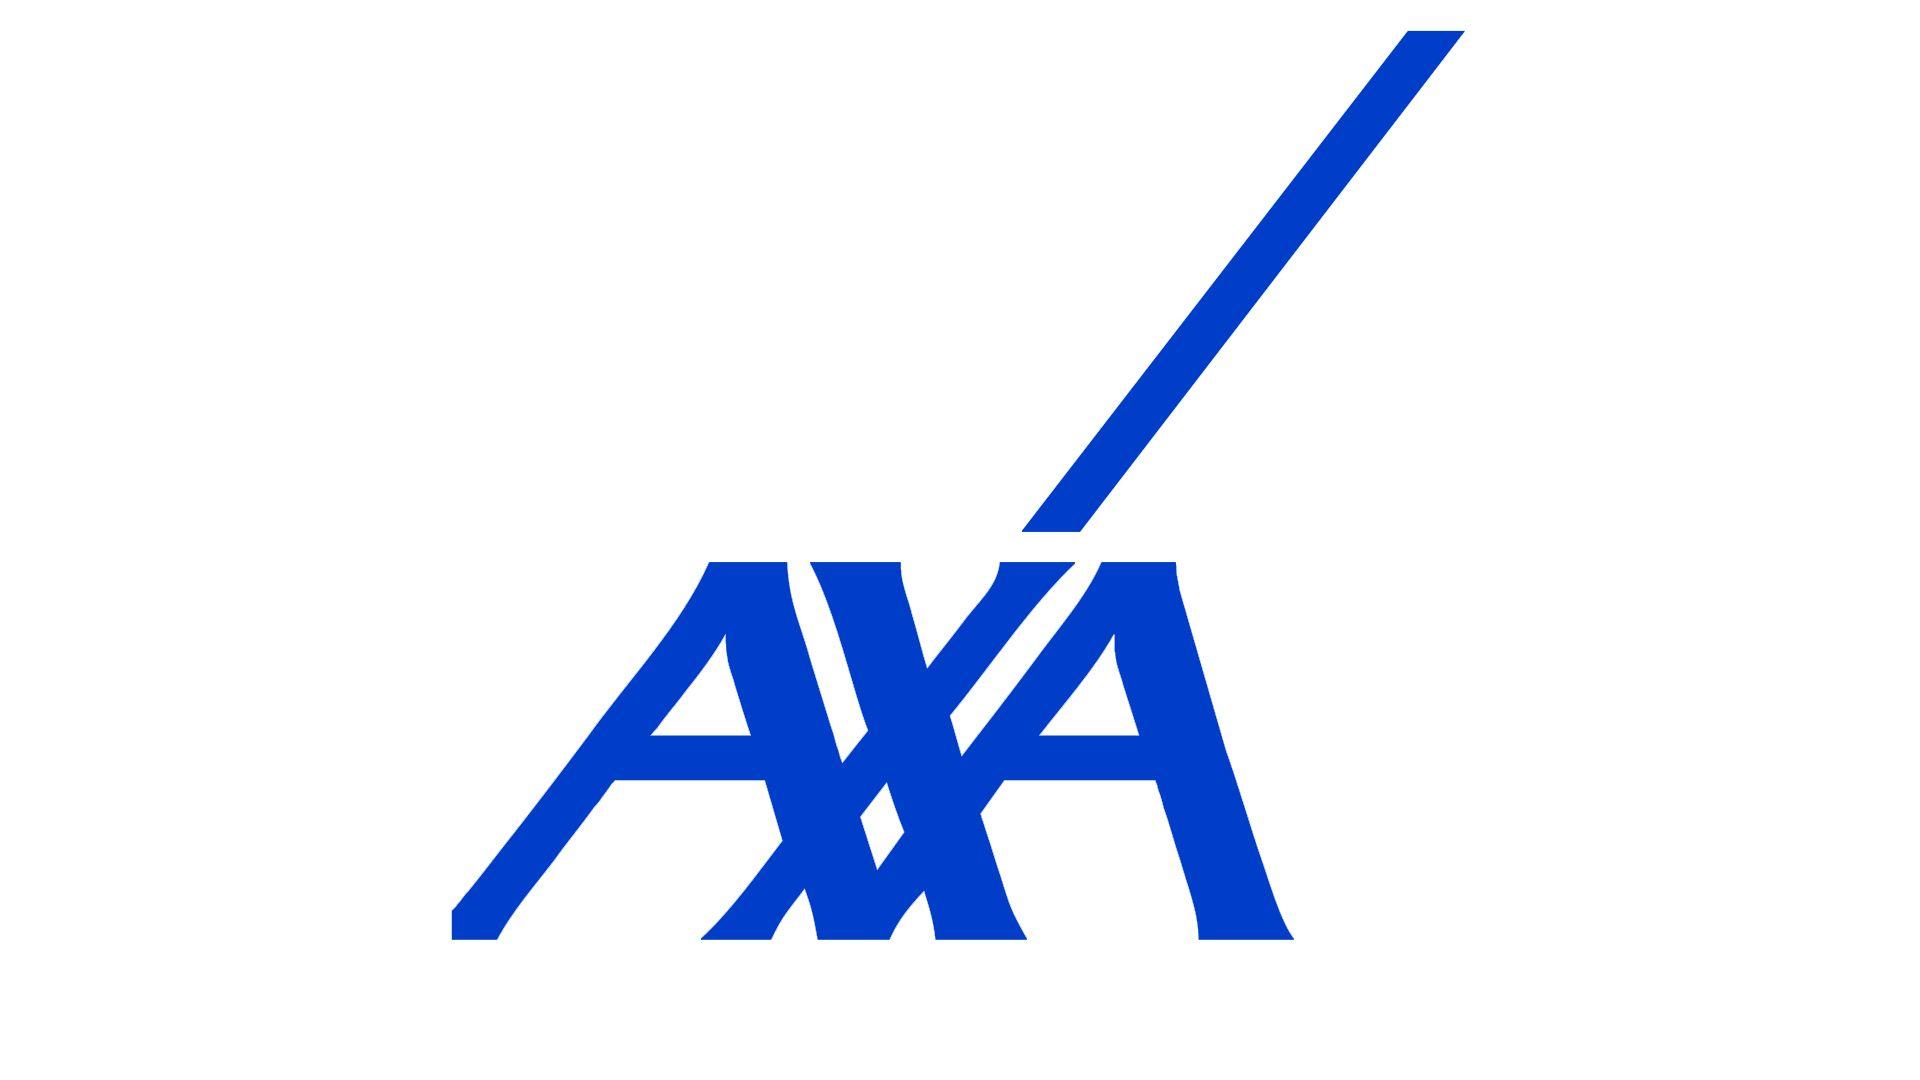 AXA Logo - Axa Logo, Axa Symbol, Meaning, History and Evolution